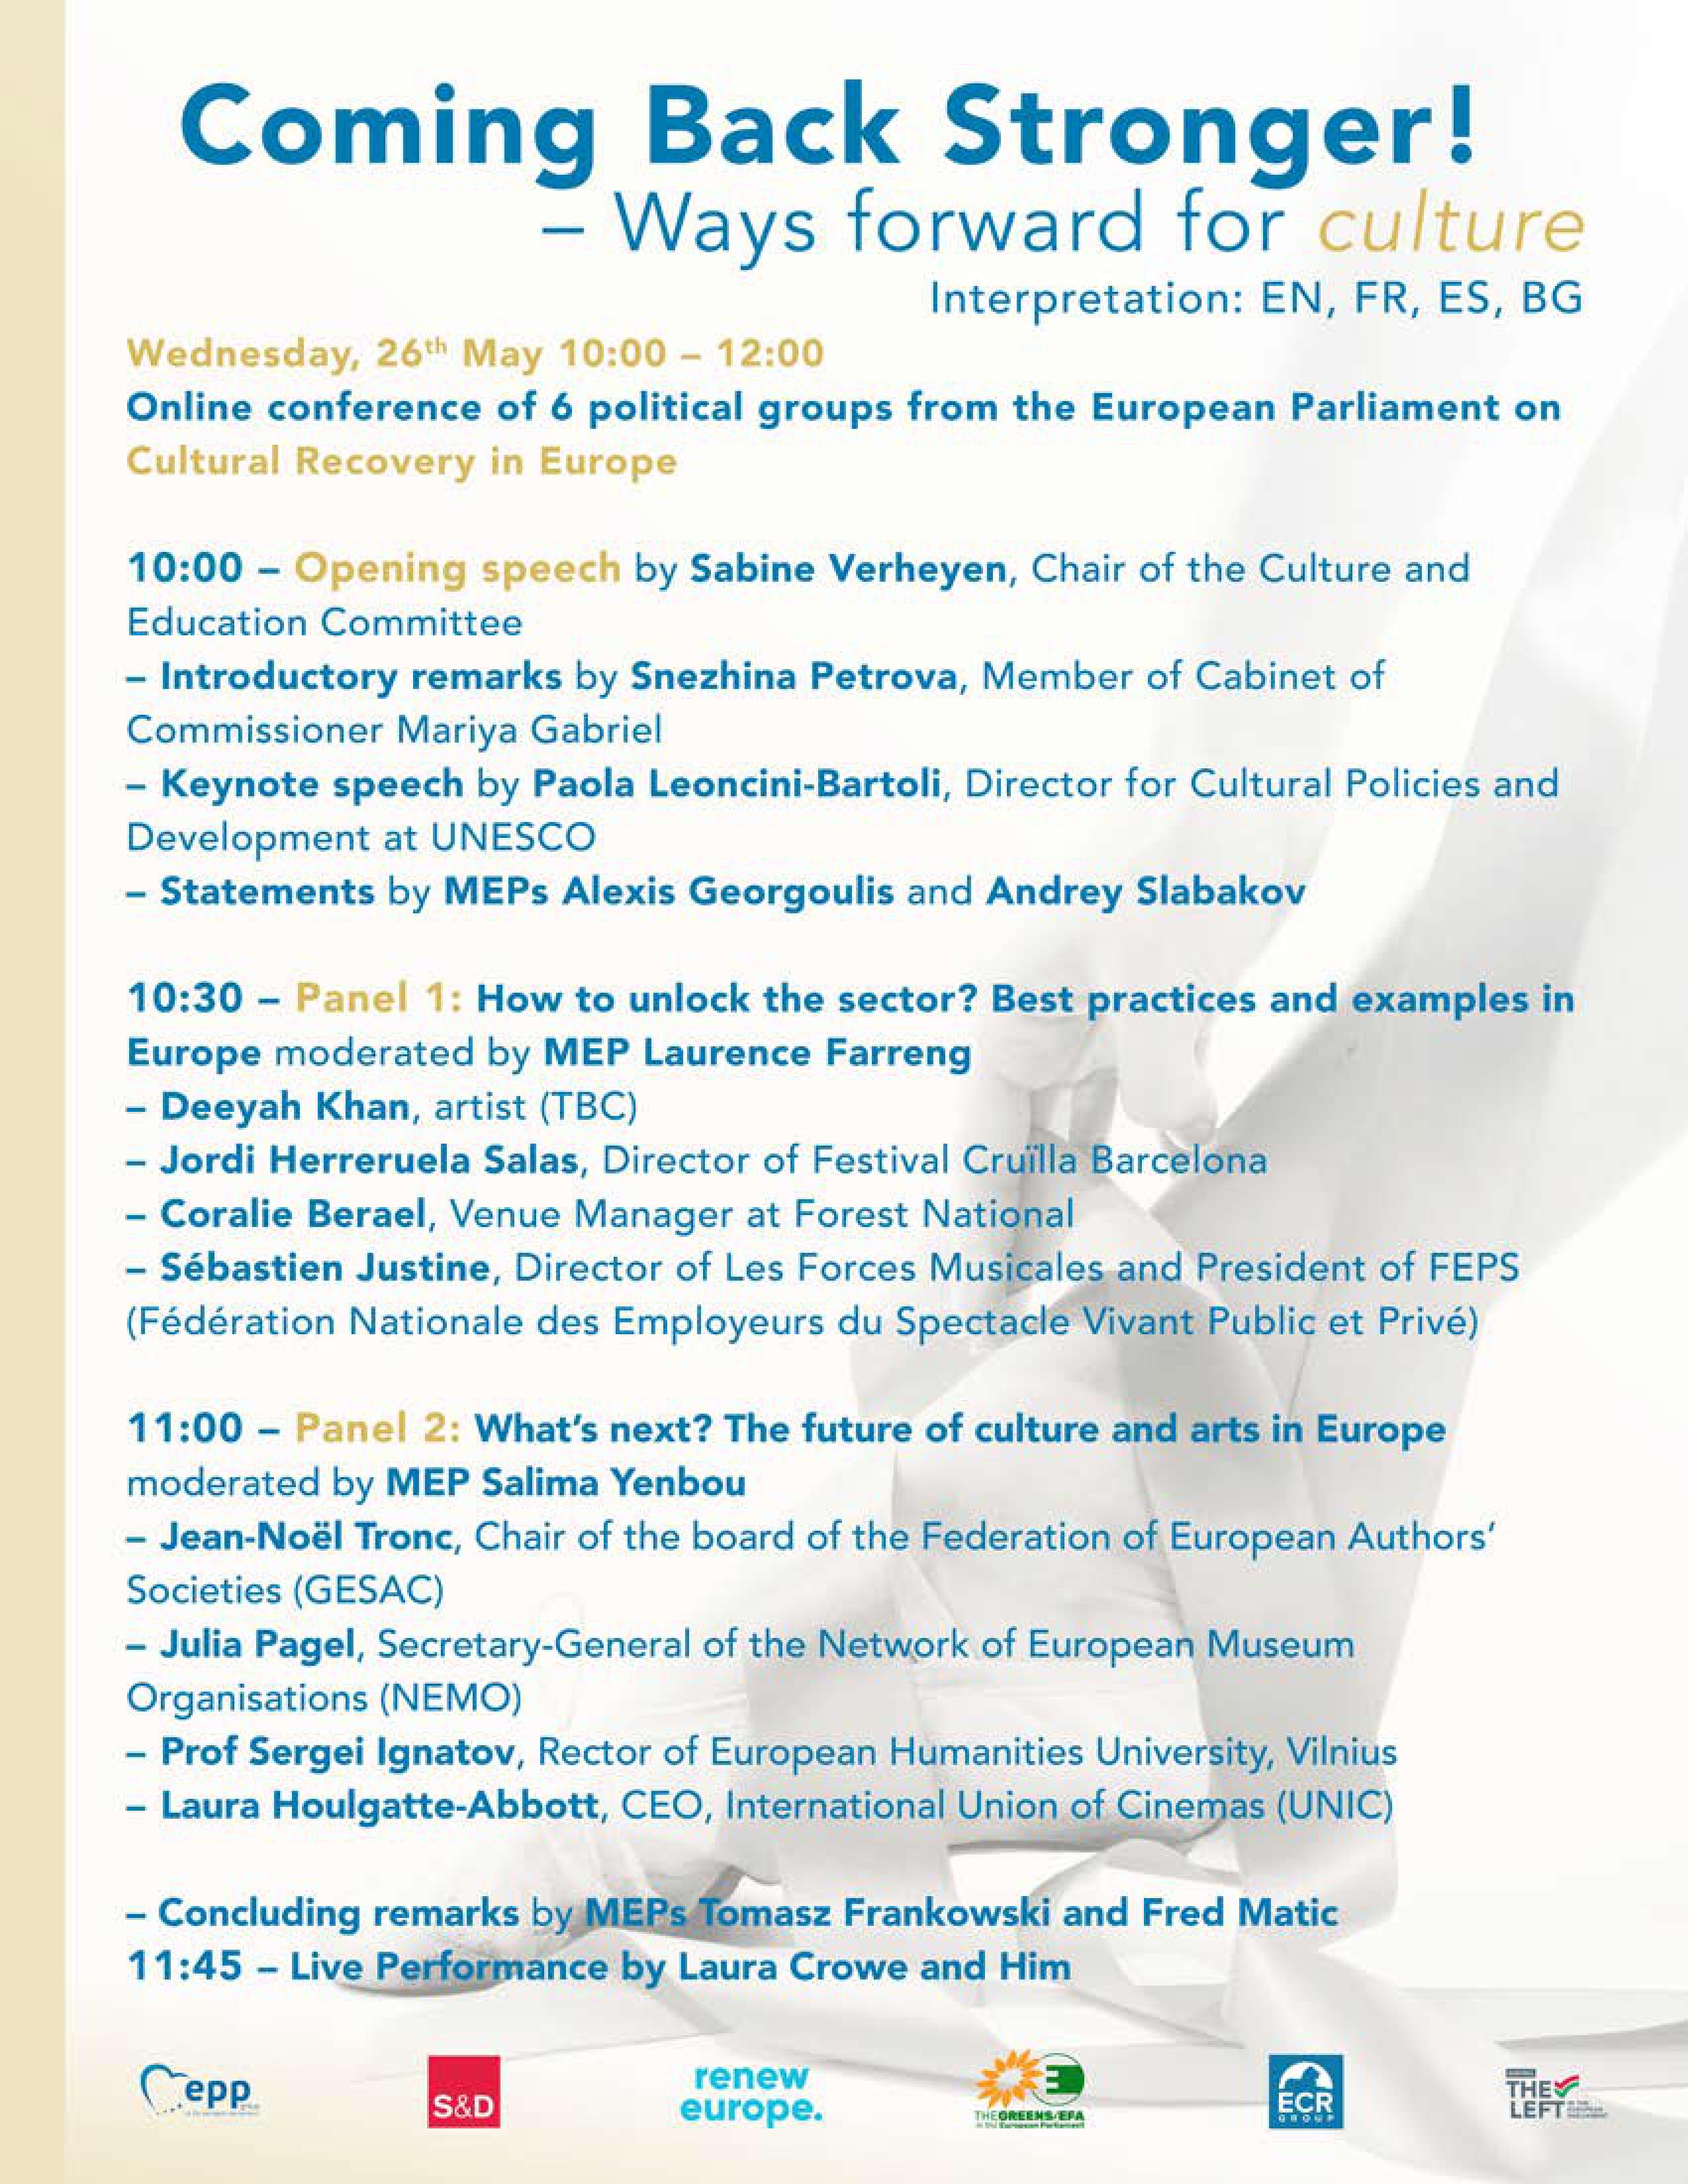 Εκδήλωση: Να επιστρέψουμε ισχυρότεροι - Τρόποι να προωθήσουμε τον Πολιτισμό - Συμμετέχει και ο Ευρωβουλευτής ΣΥΡΙΖΑ - ΠΣ Αλ. Γεωργούλης